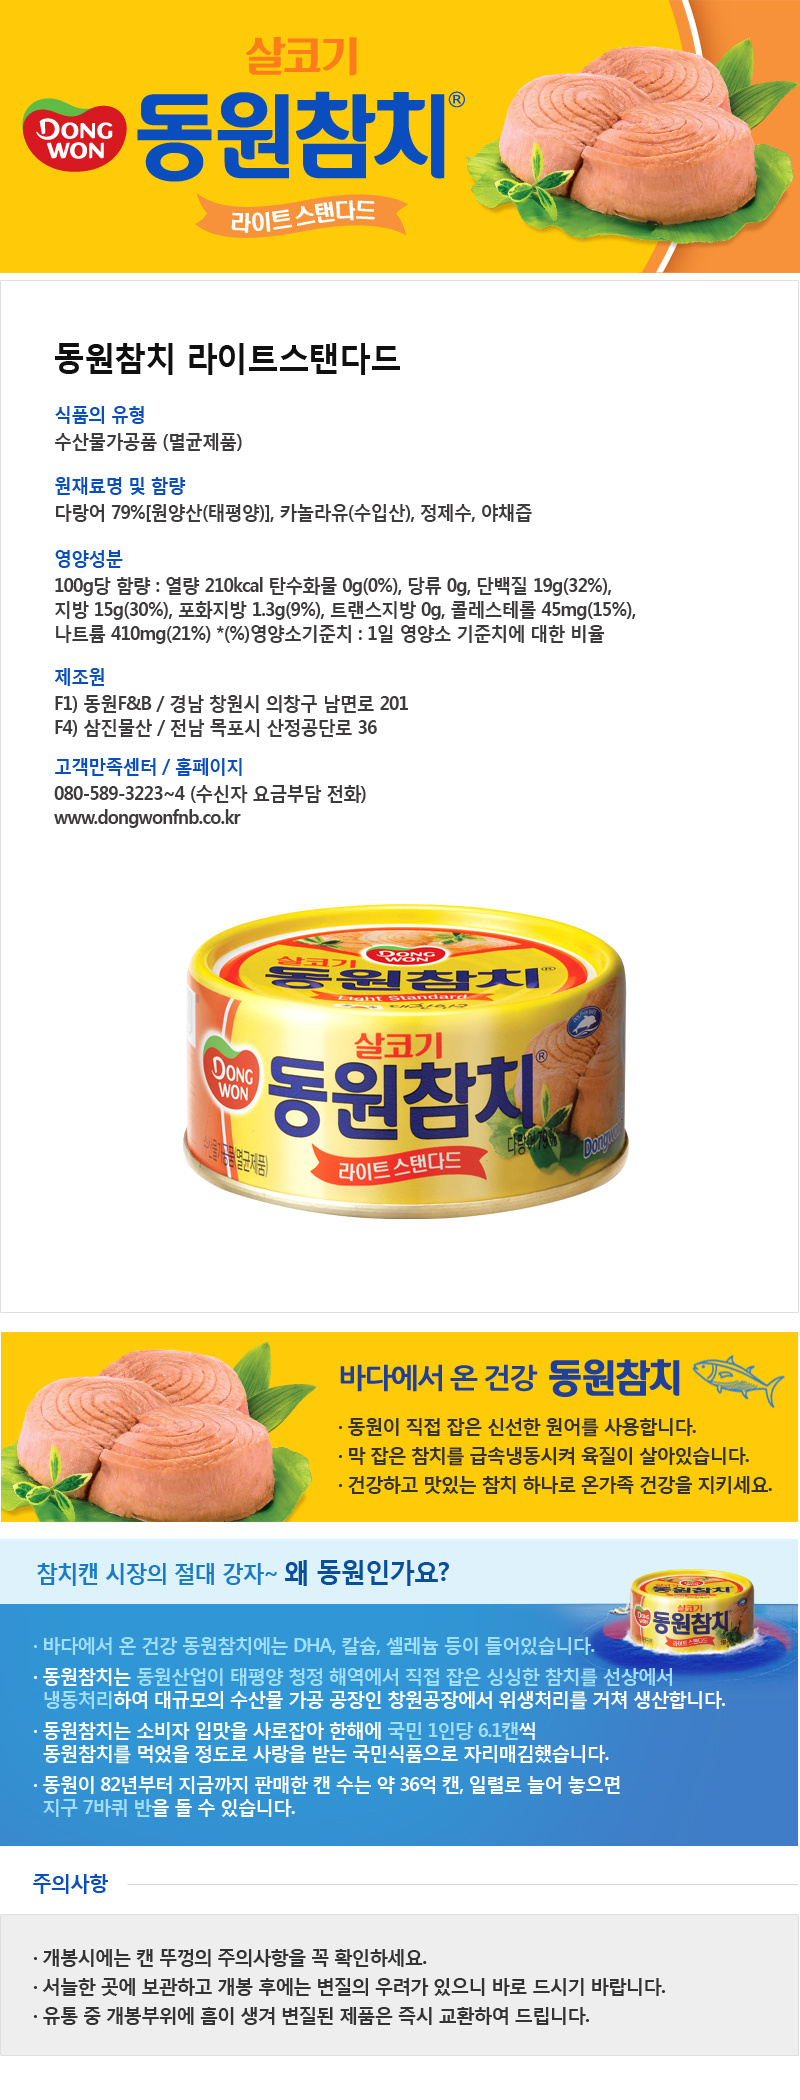 韓國食品-[東遠] 芥花籽油吞拿魚 100g